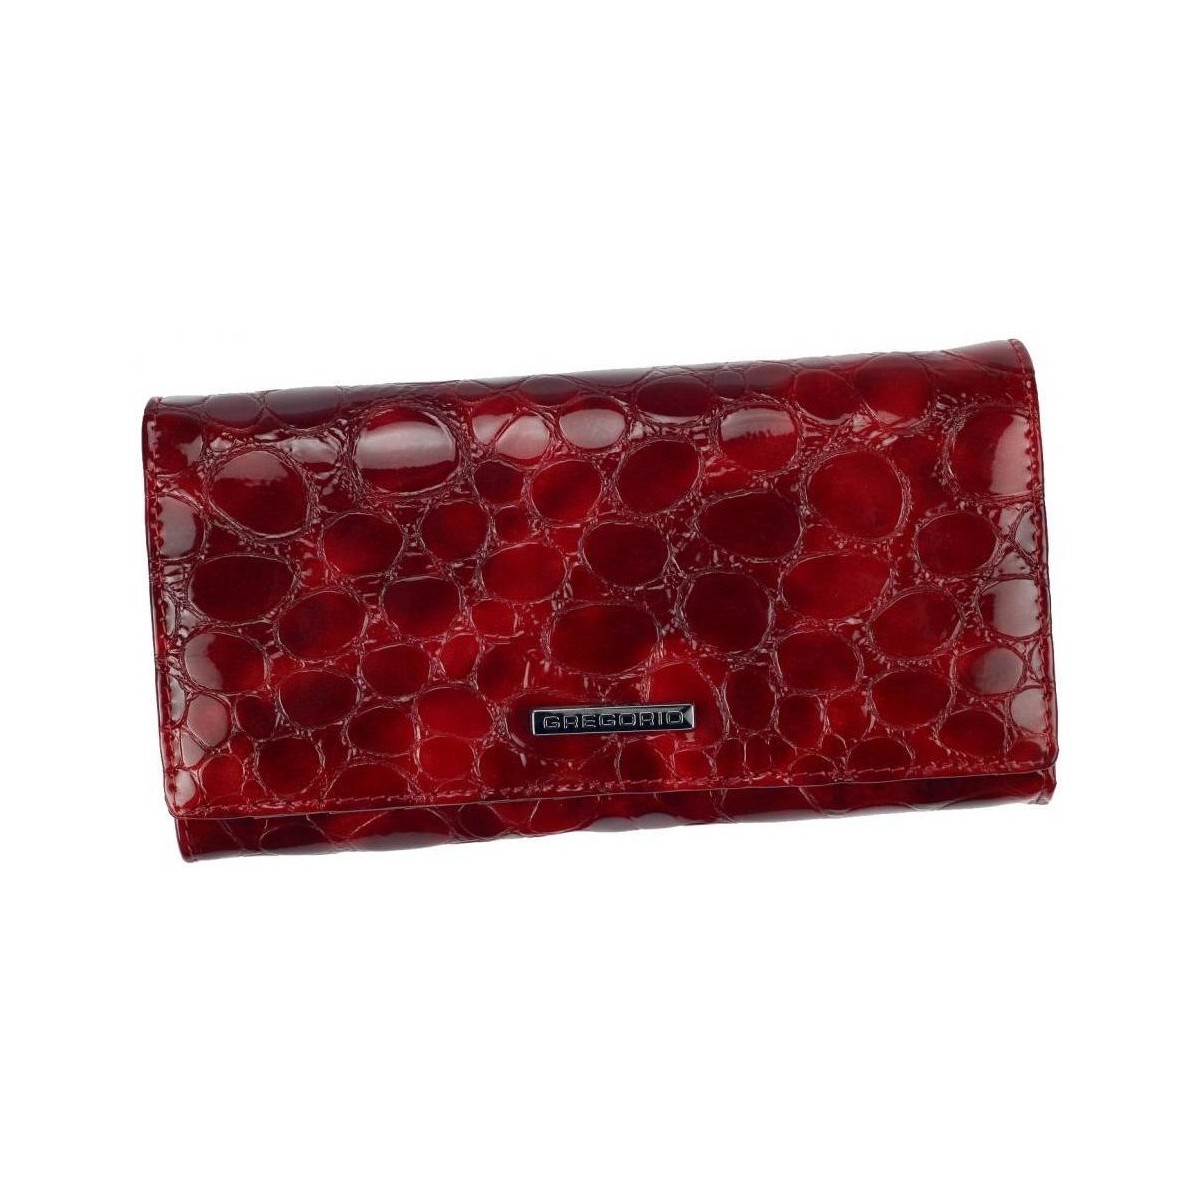 Taška Ženy Náprsní tašky Gregorio Kožená červená dámská peněženka v dárkové krabičce Červená